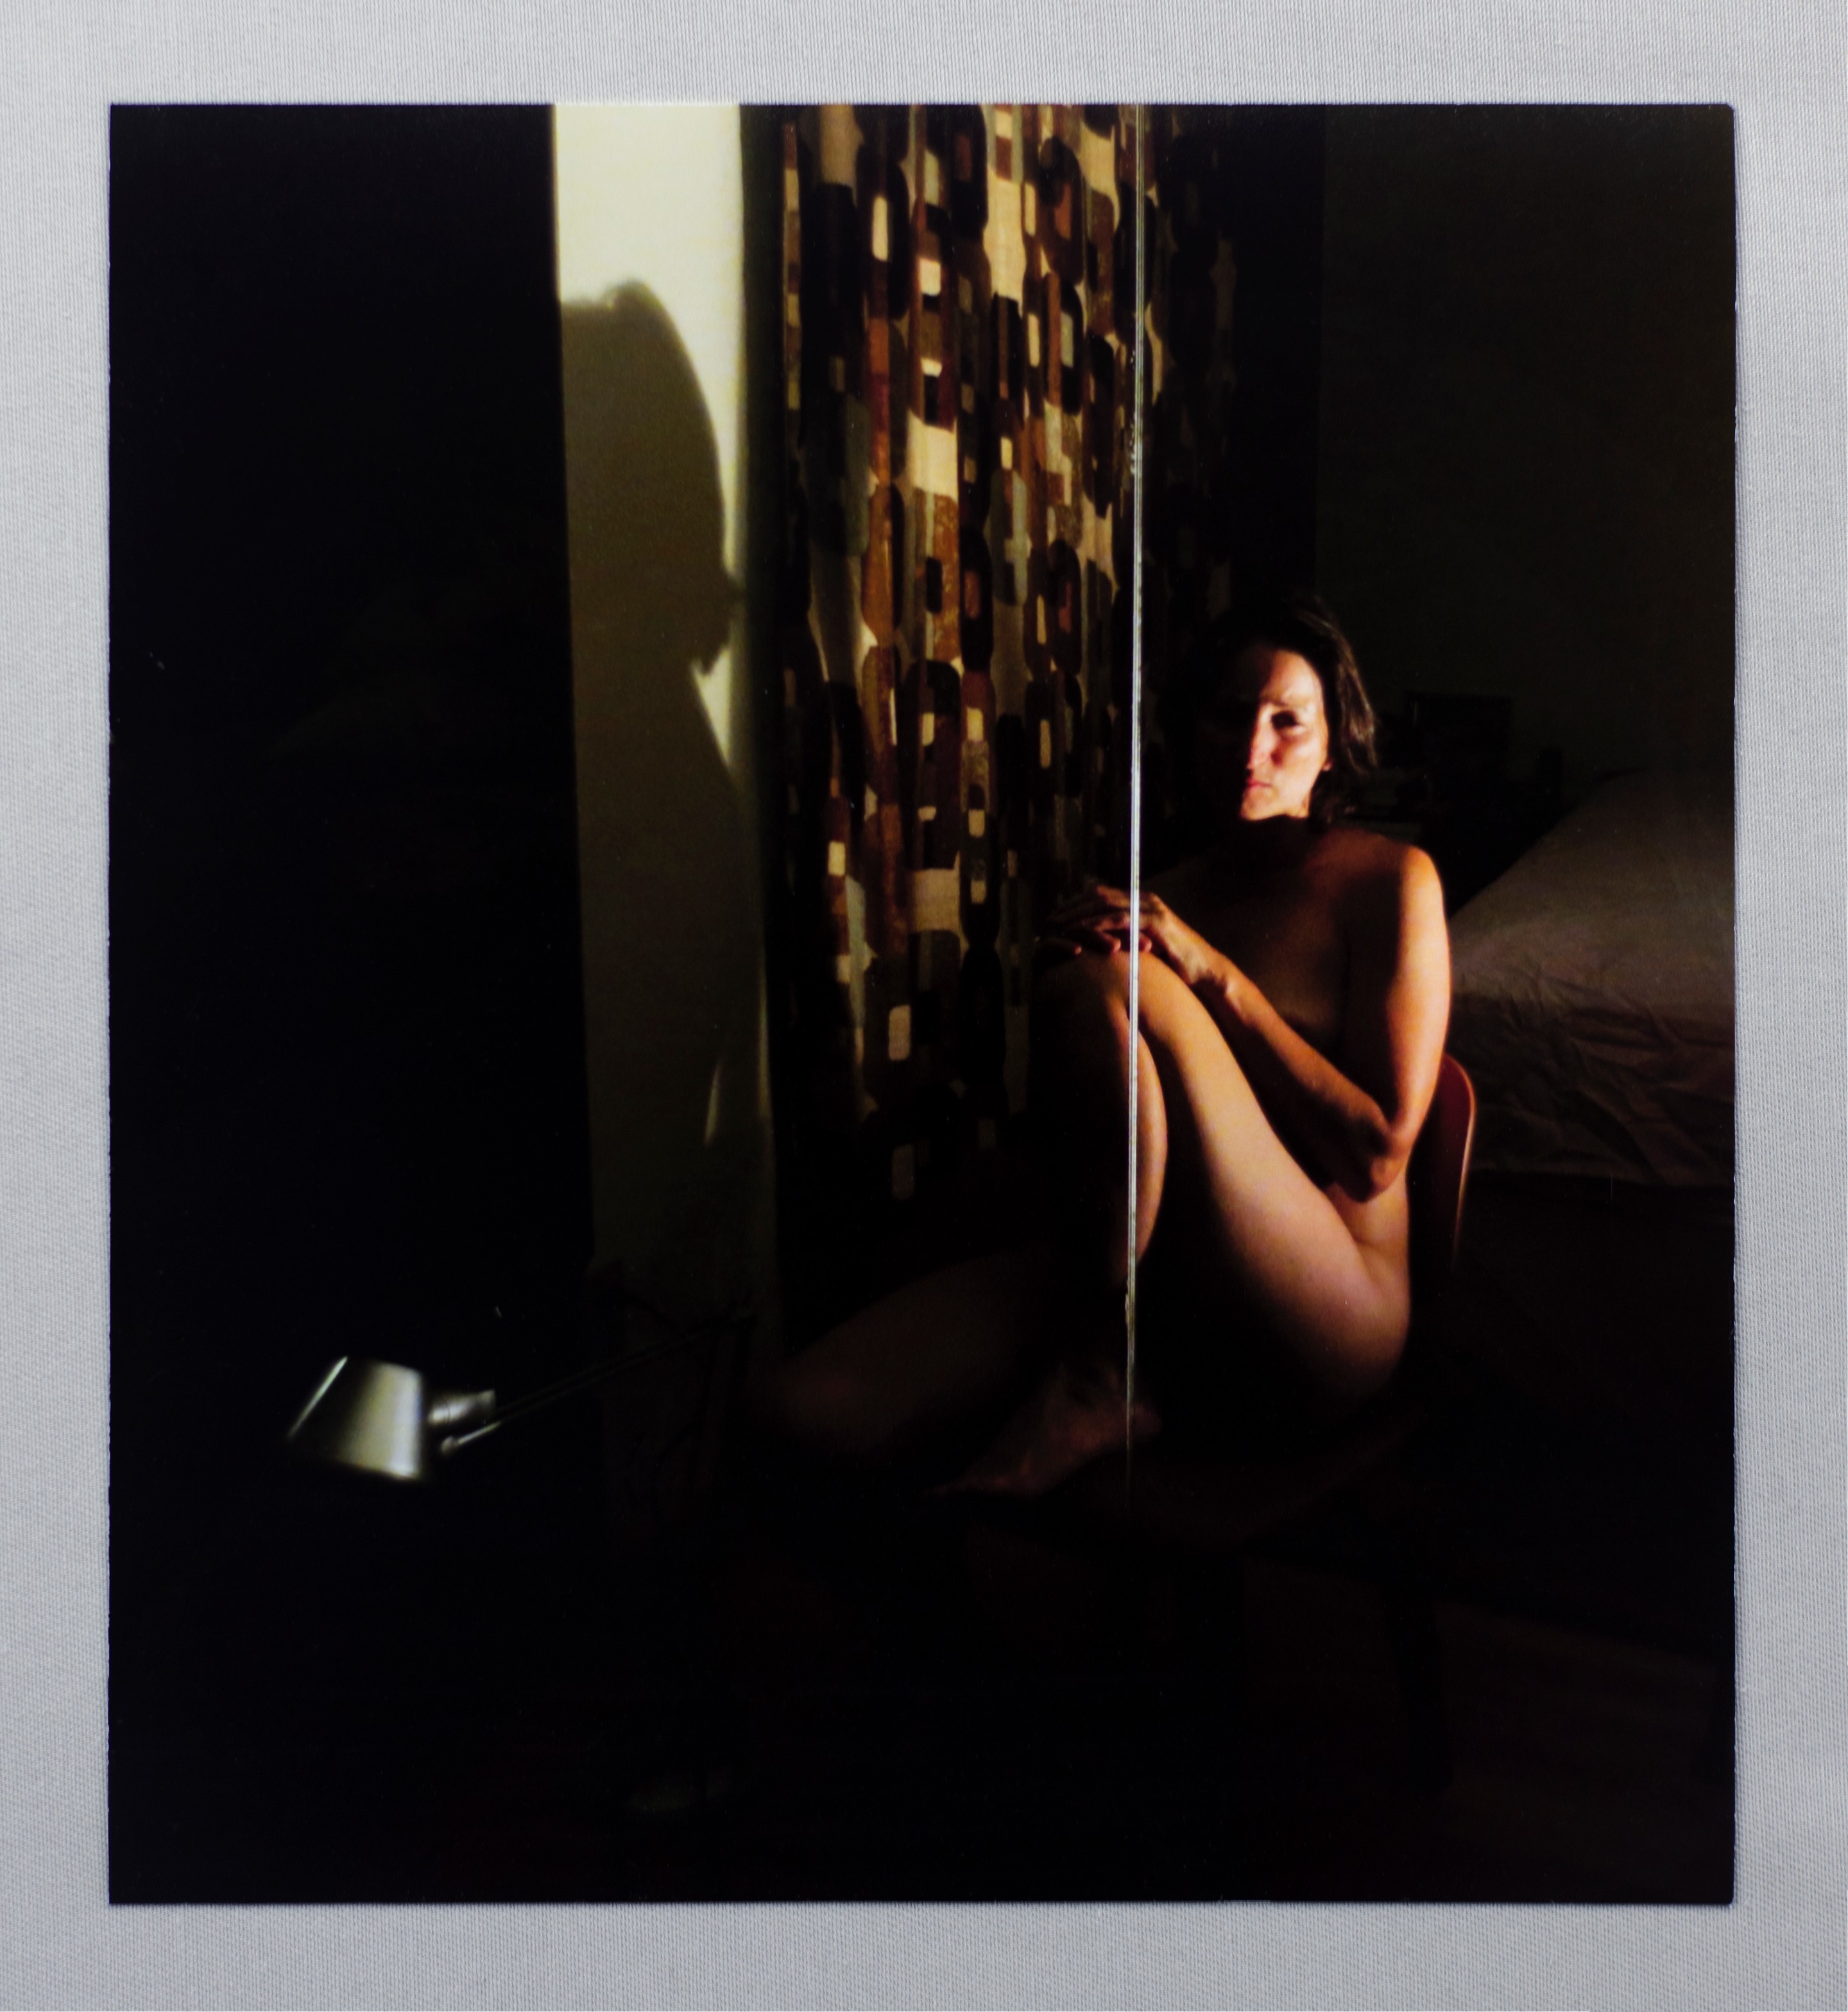 Monica Majoli - Primary Materials for Black Mirror (2009 - 2012). Archival pigment print. 8h x 7w inches.